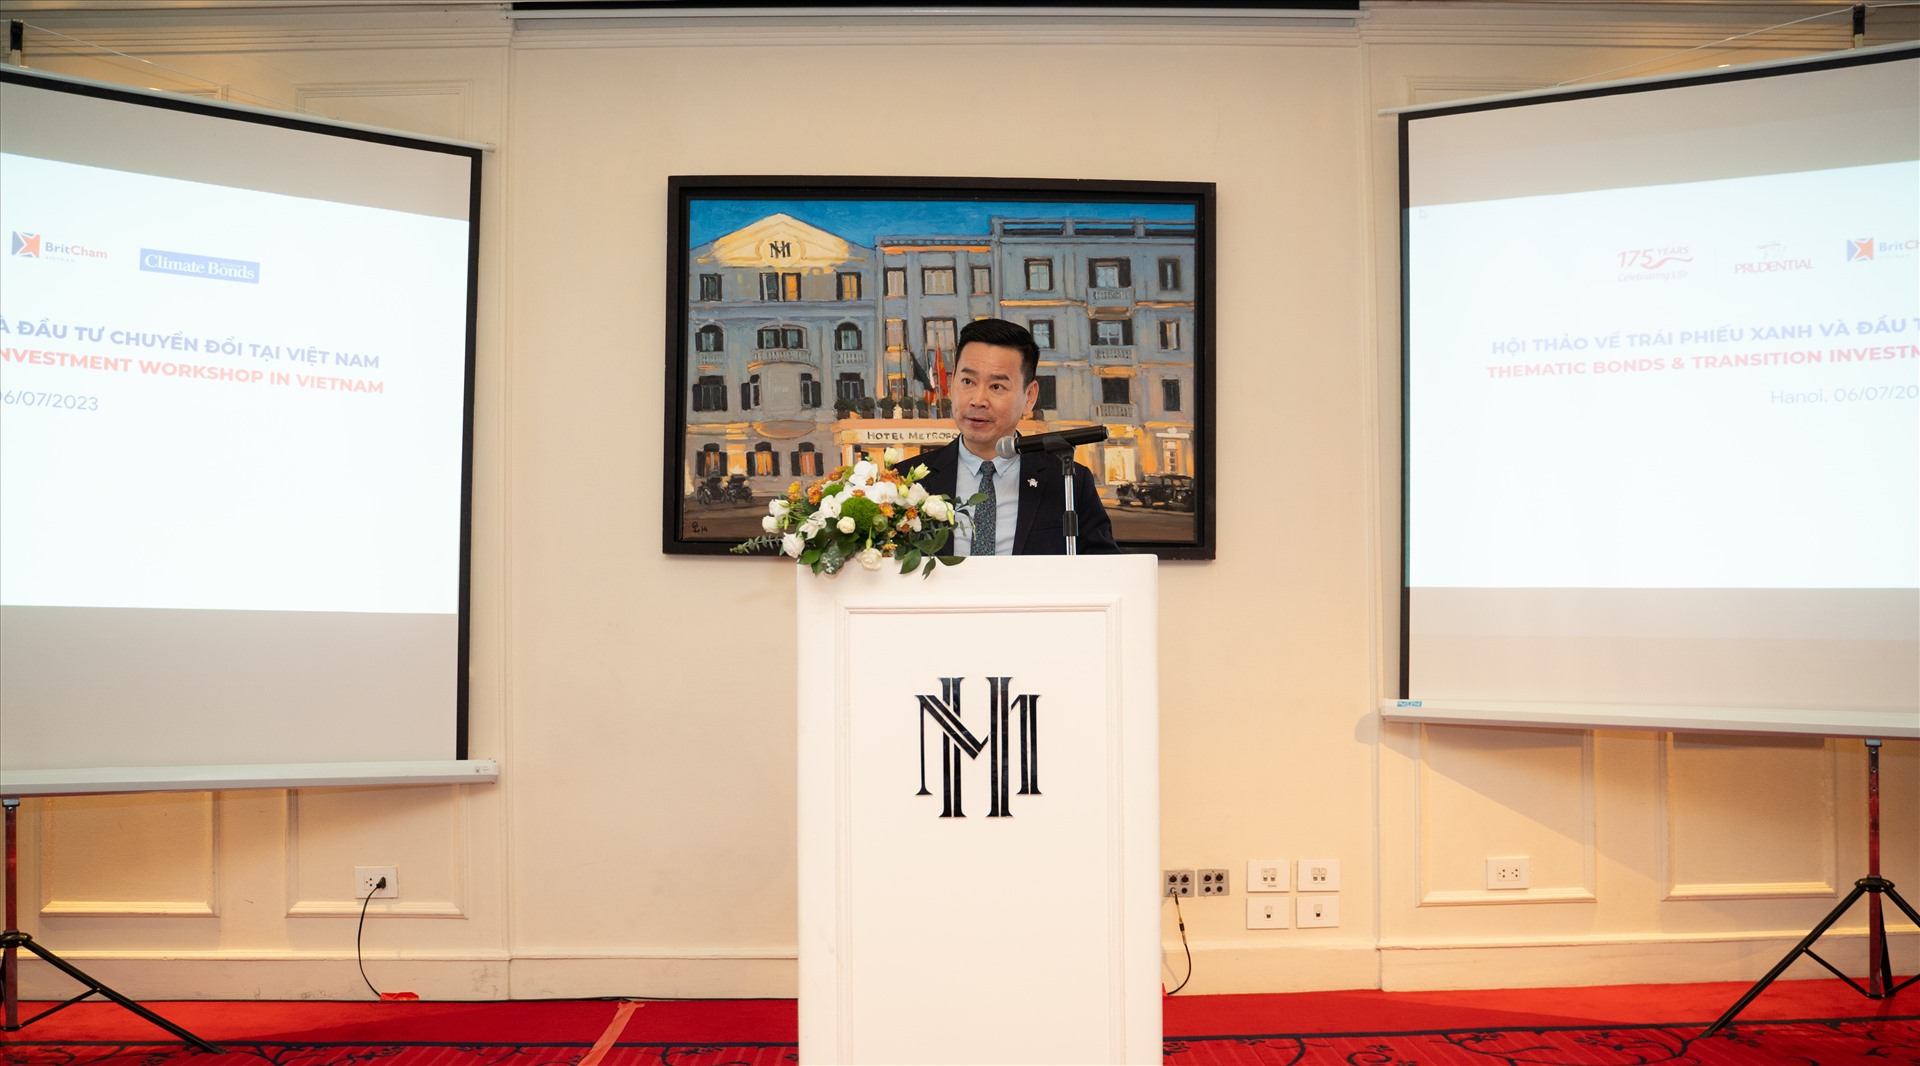 Ông Phương Tiến Minh, Tổng Giám đốc Prudential Việt Nam chia sẻ buổi hội thảo này là một nỗ lực tiếp theo của Prudential nhằm khẳng định mối quan tâm của Prudential đối với sự phát triển bền vững của thị trường Việt Nam.Nguồn ảnh: Prudential 